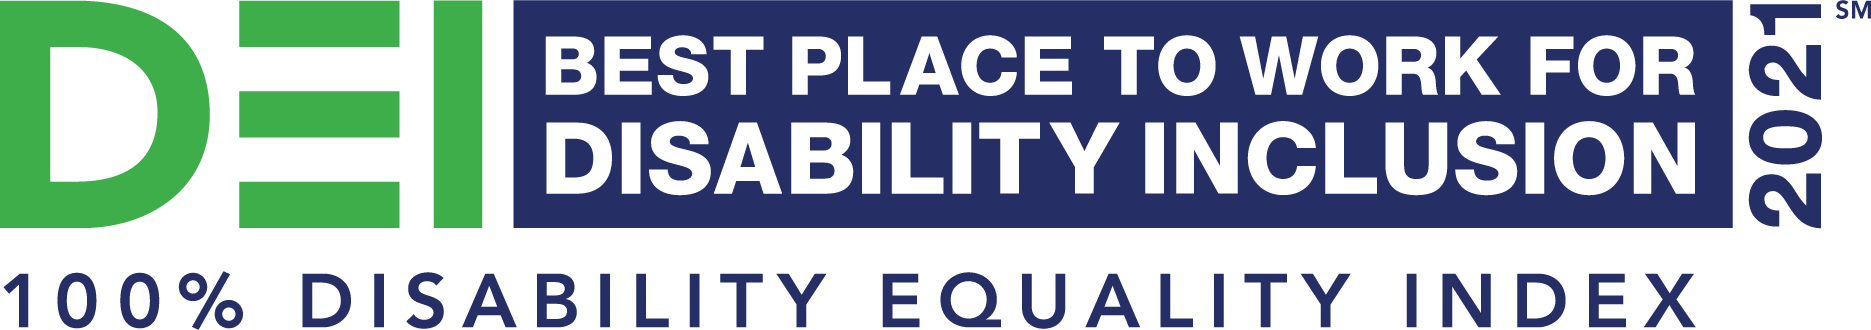 disability equality index logo